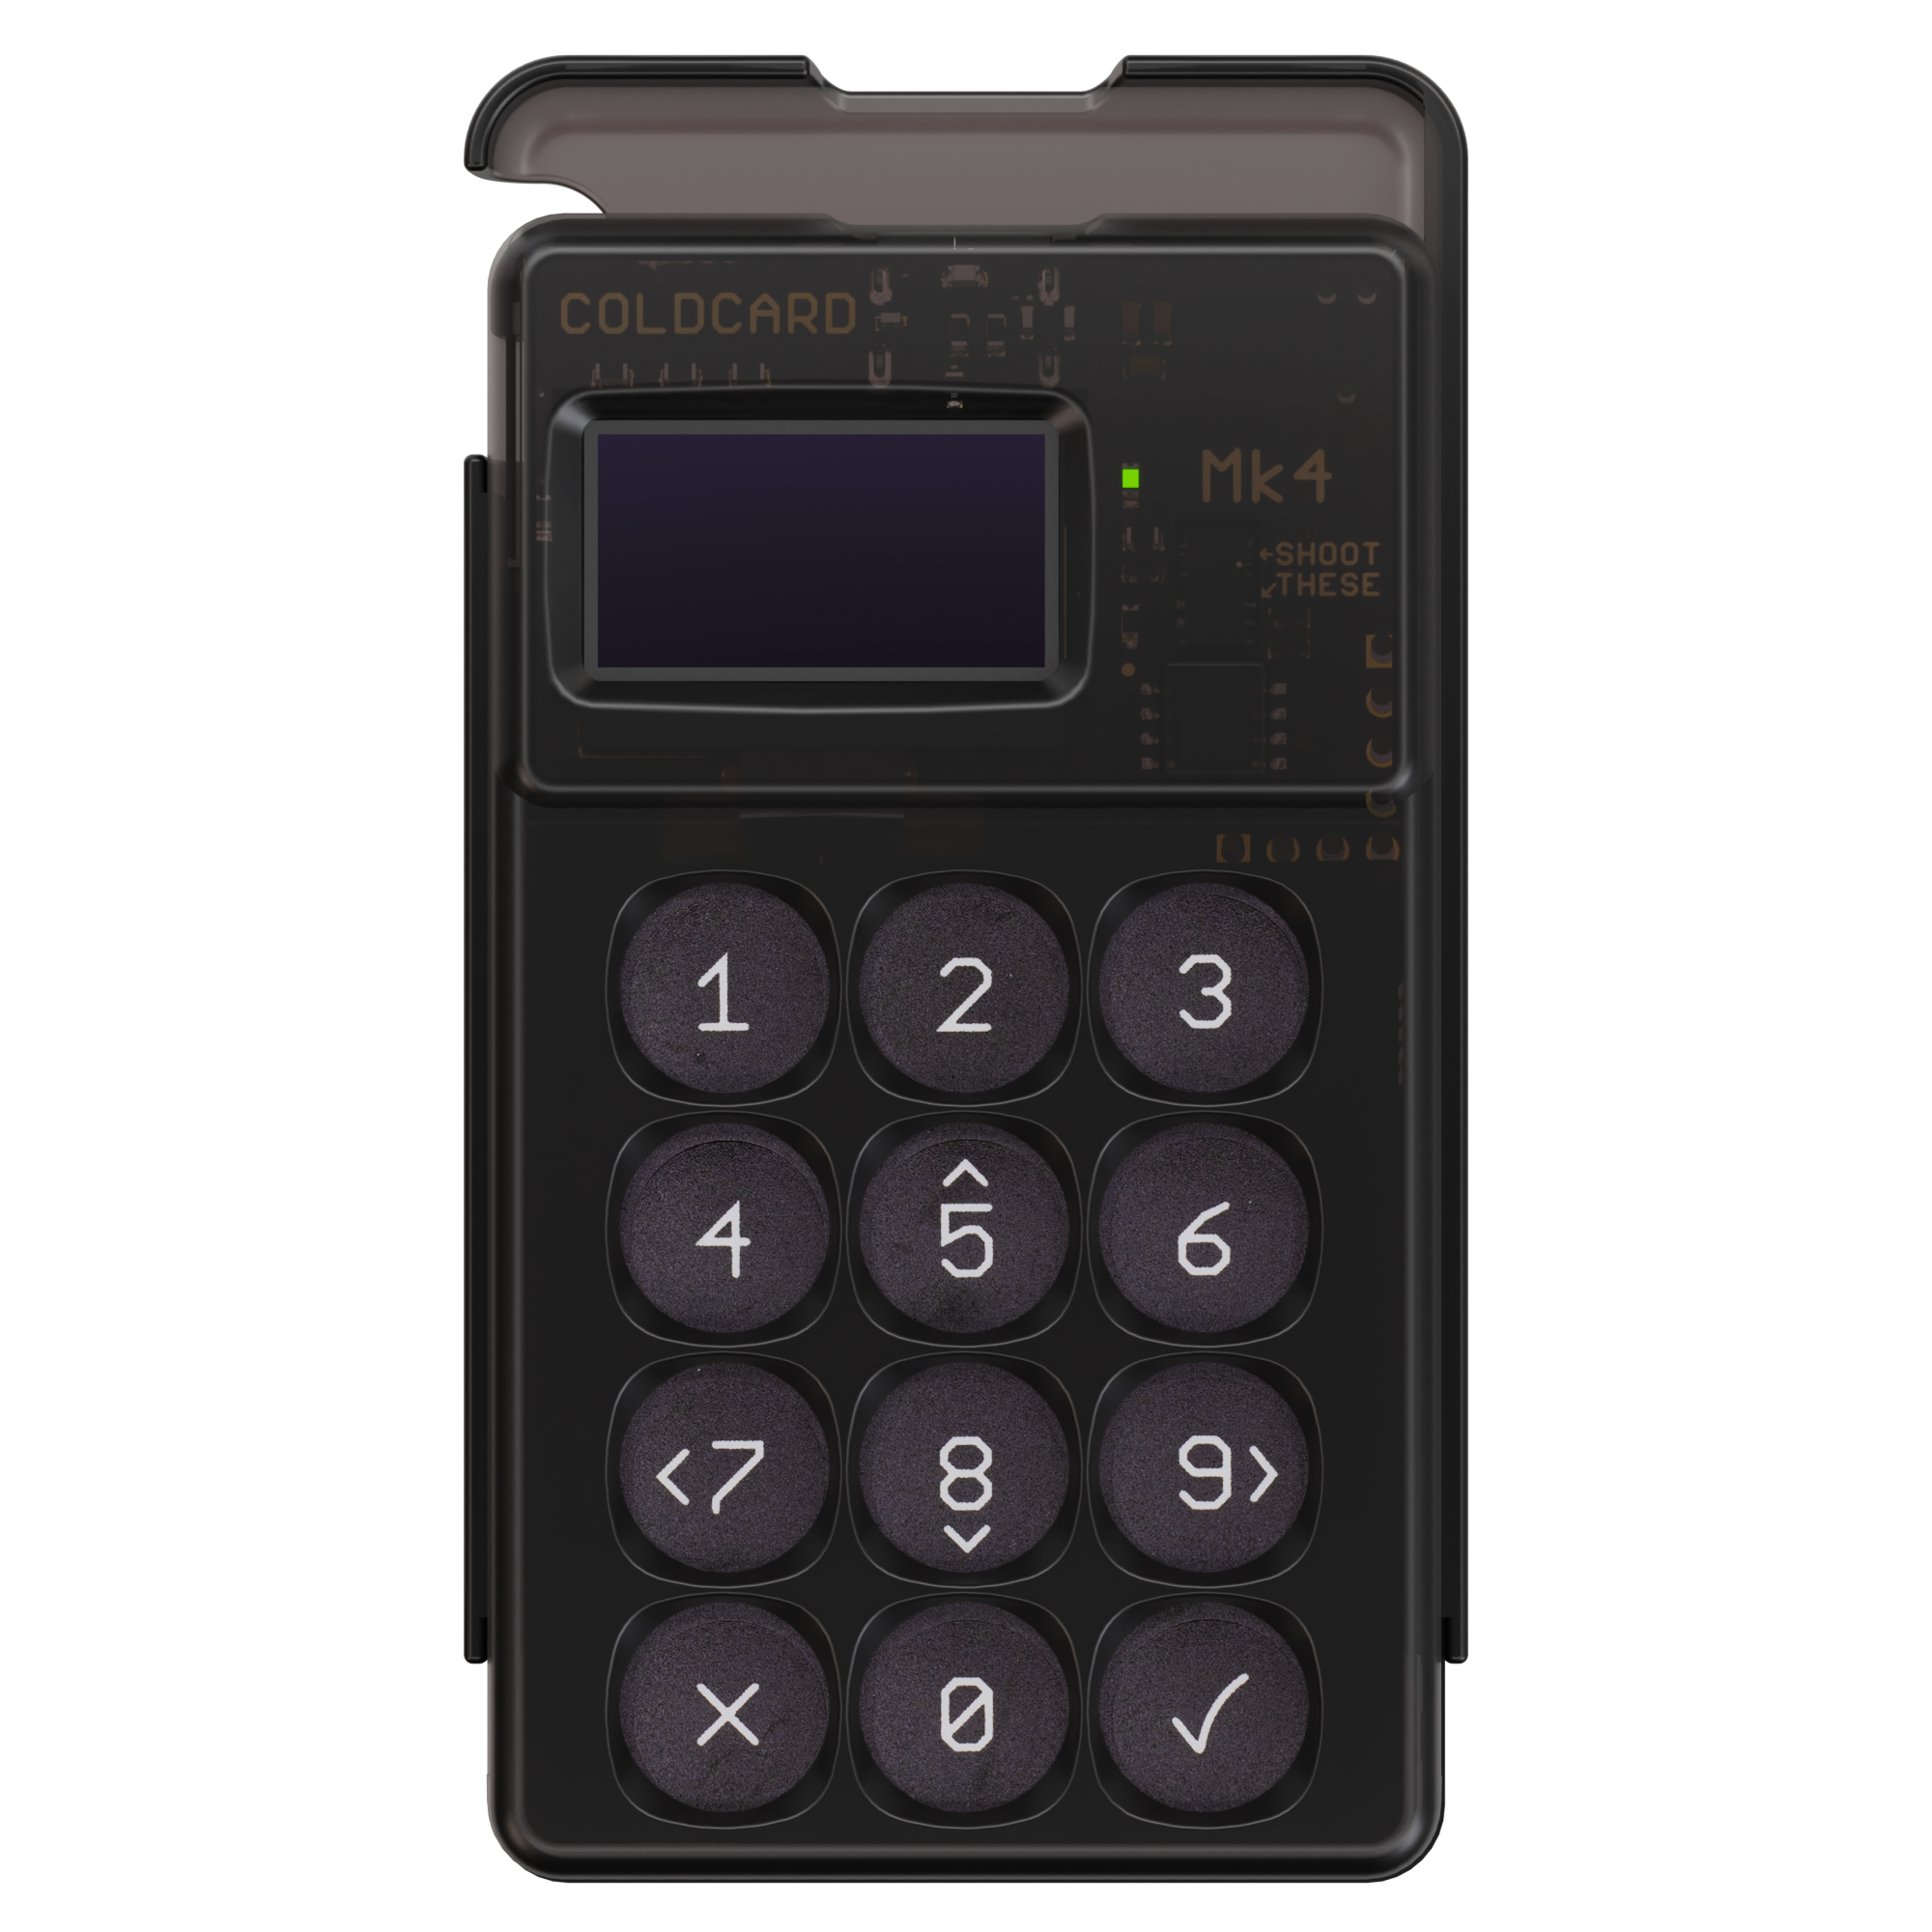 Аппаратный hodl-биткоин кошелек Coldcard MK4 Black с NFC